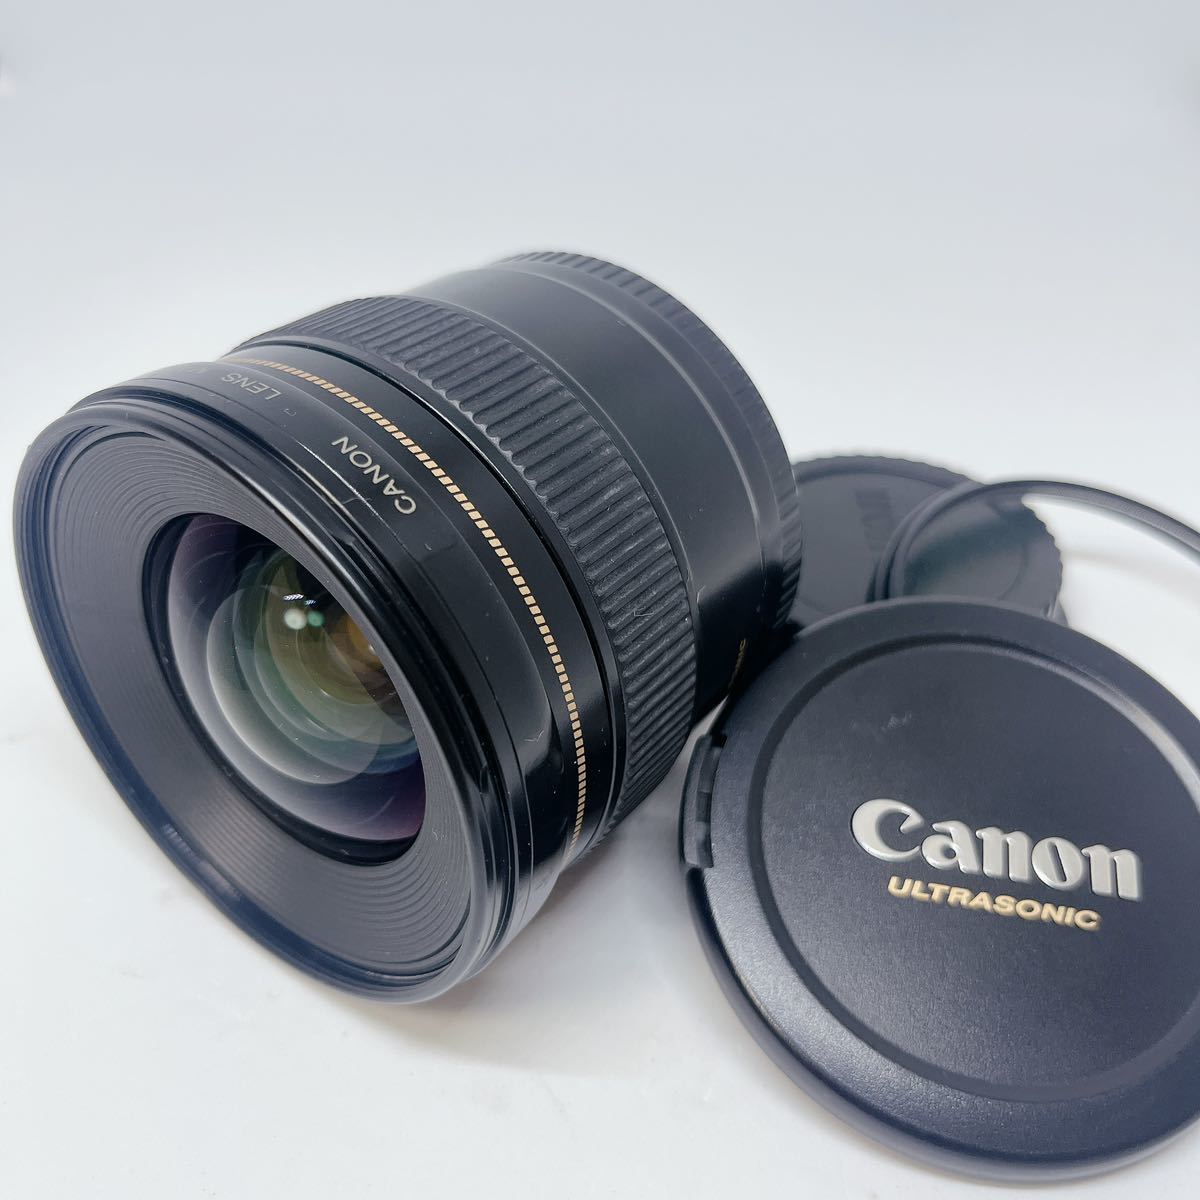 激安本物 Canon キャノン USM 1:2.8 20mm EF レンズ(ズーム) - lotnet.com